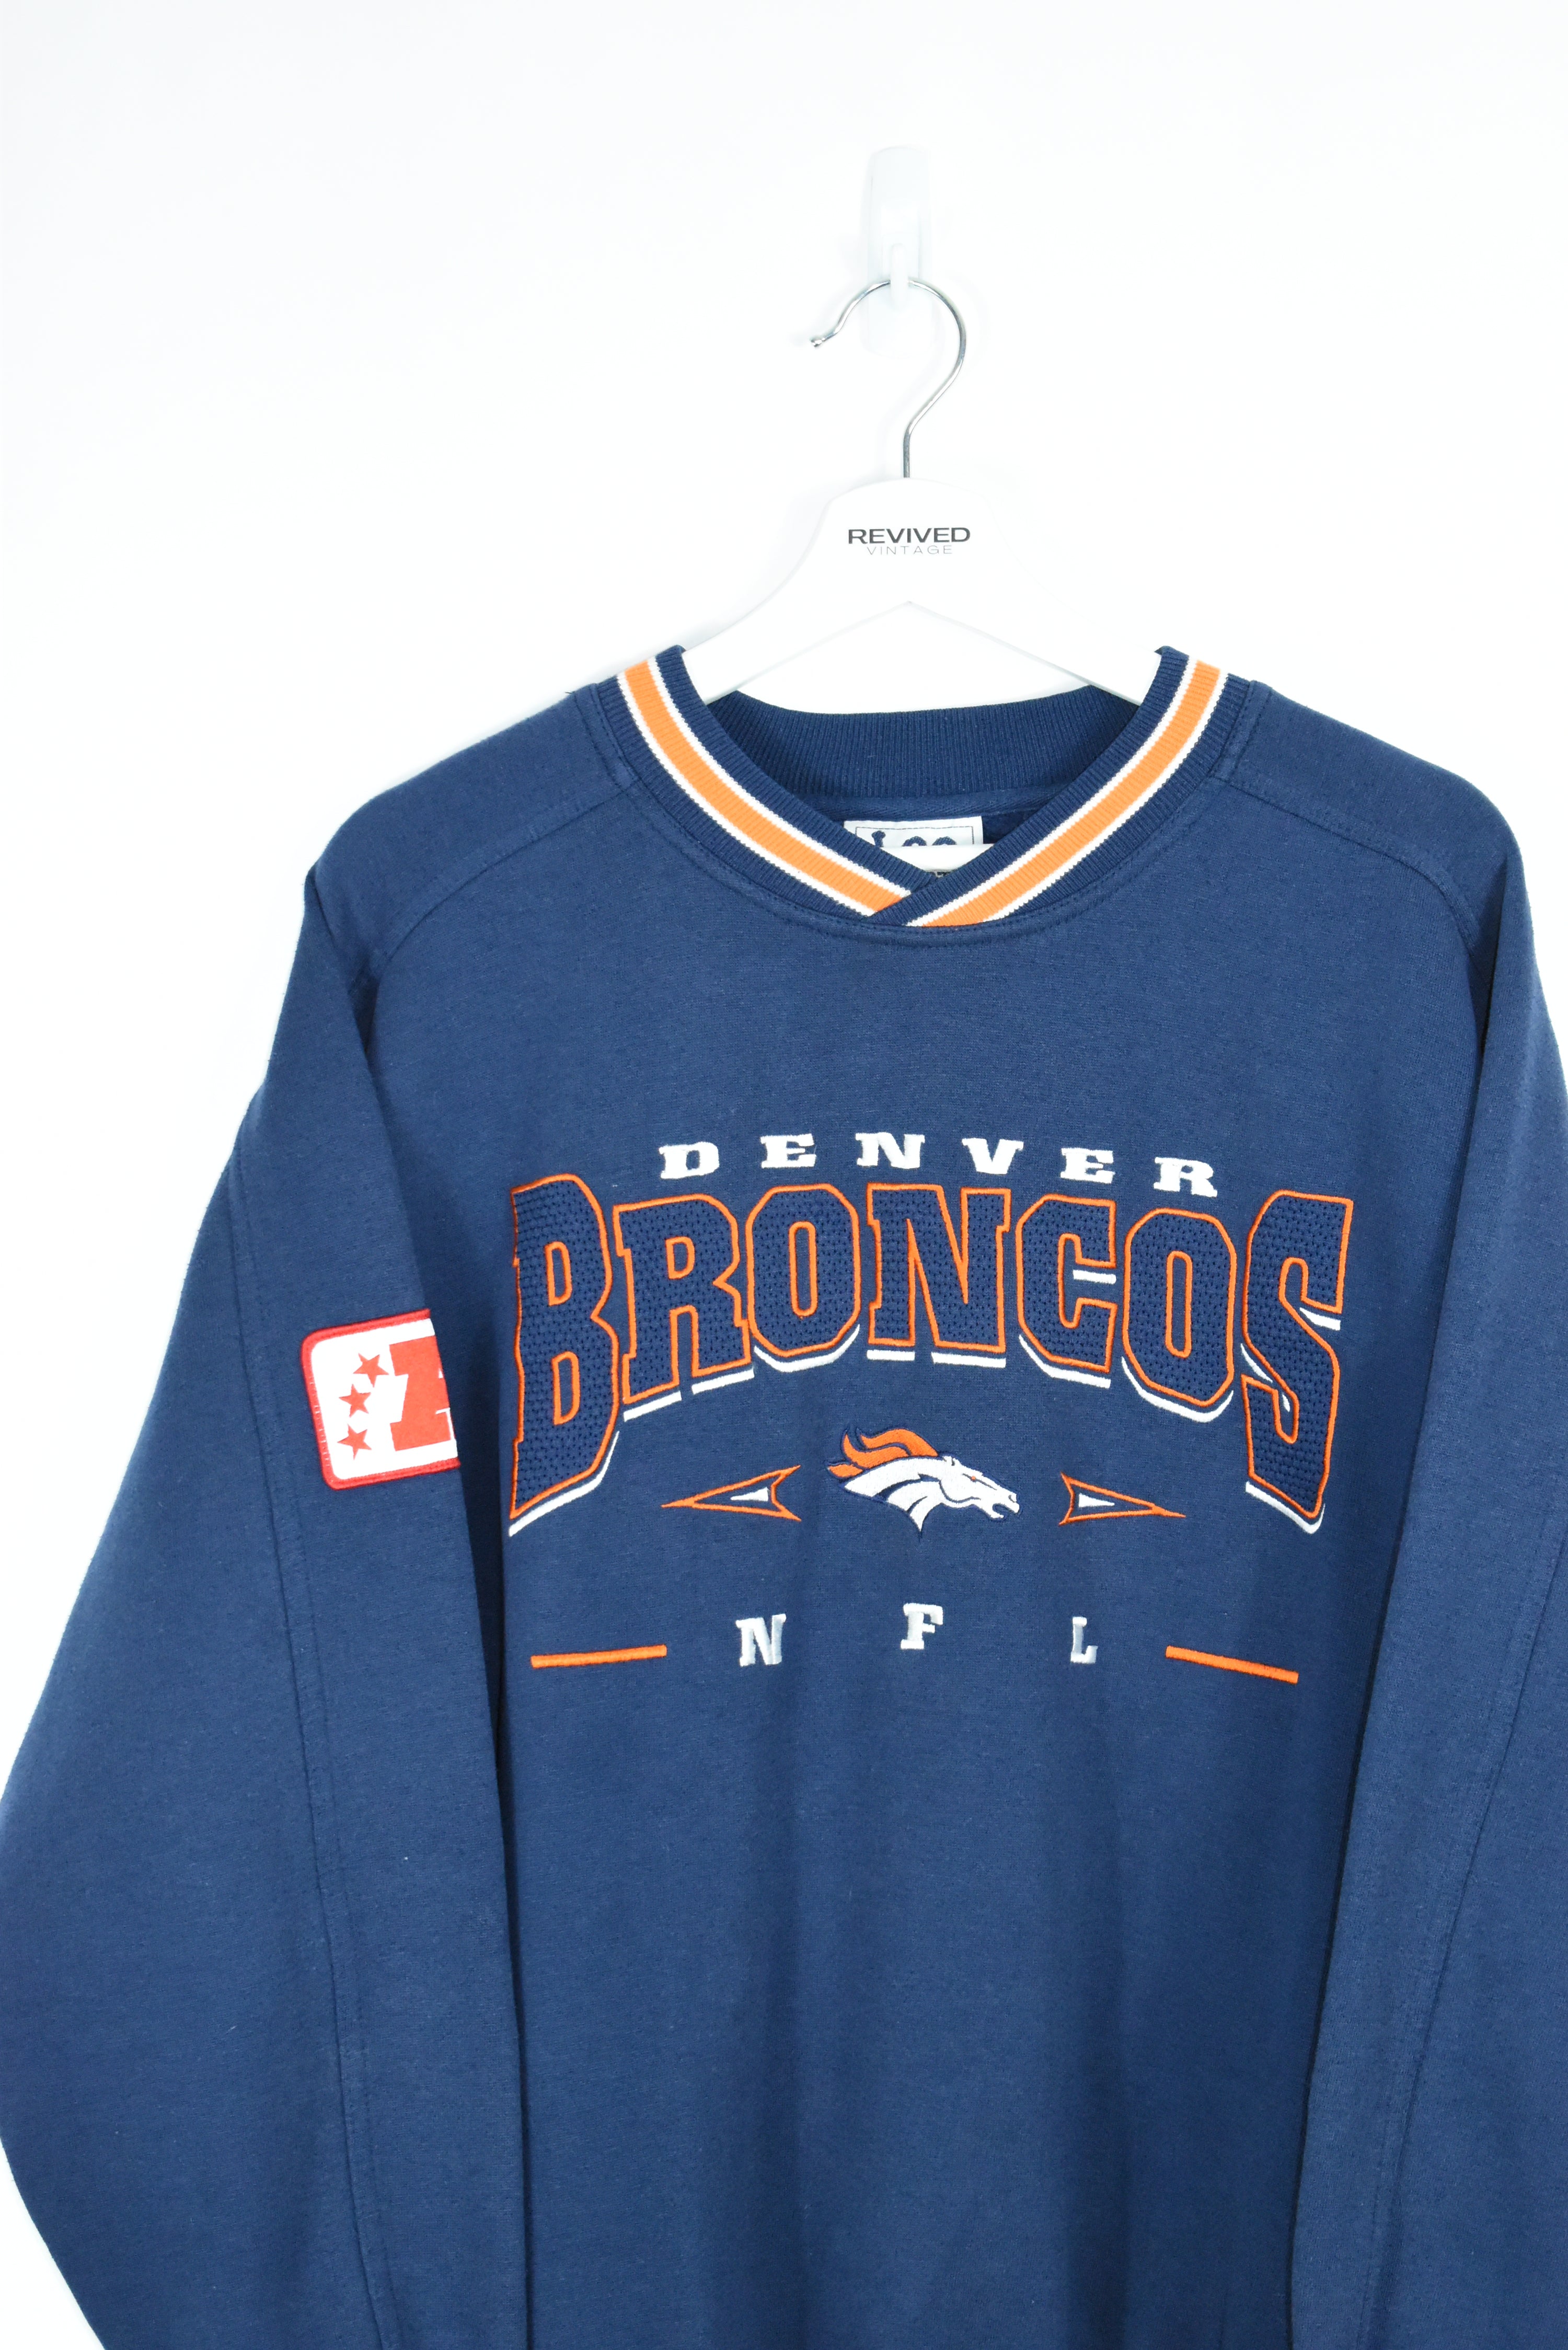 Vintage Lee Sport Denver Broncos Embroidery Sweatshirt Large